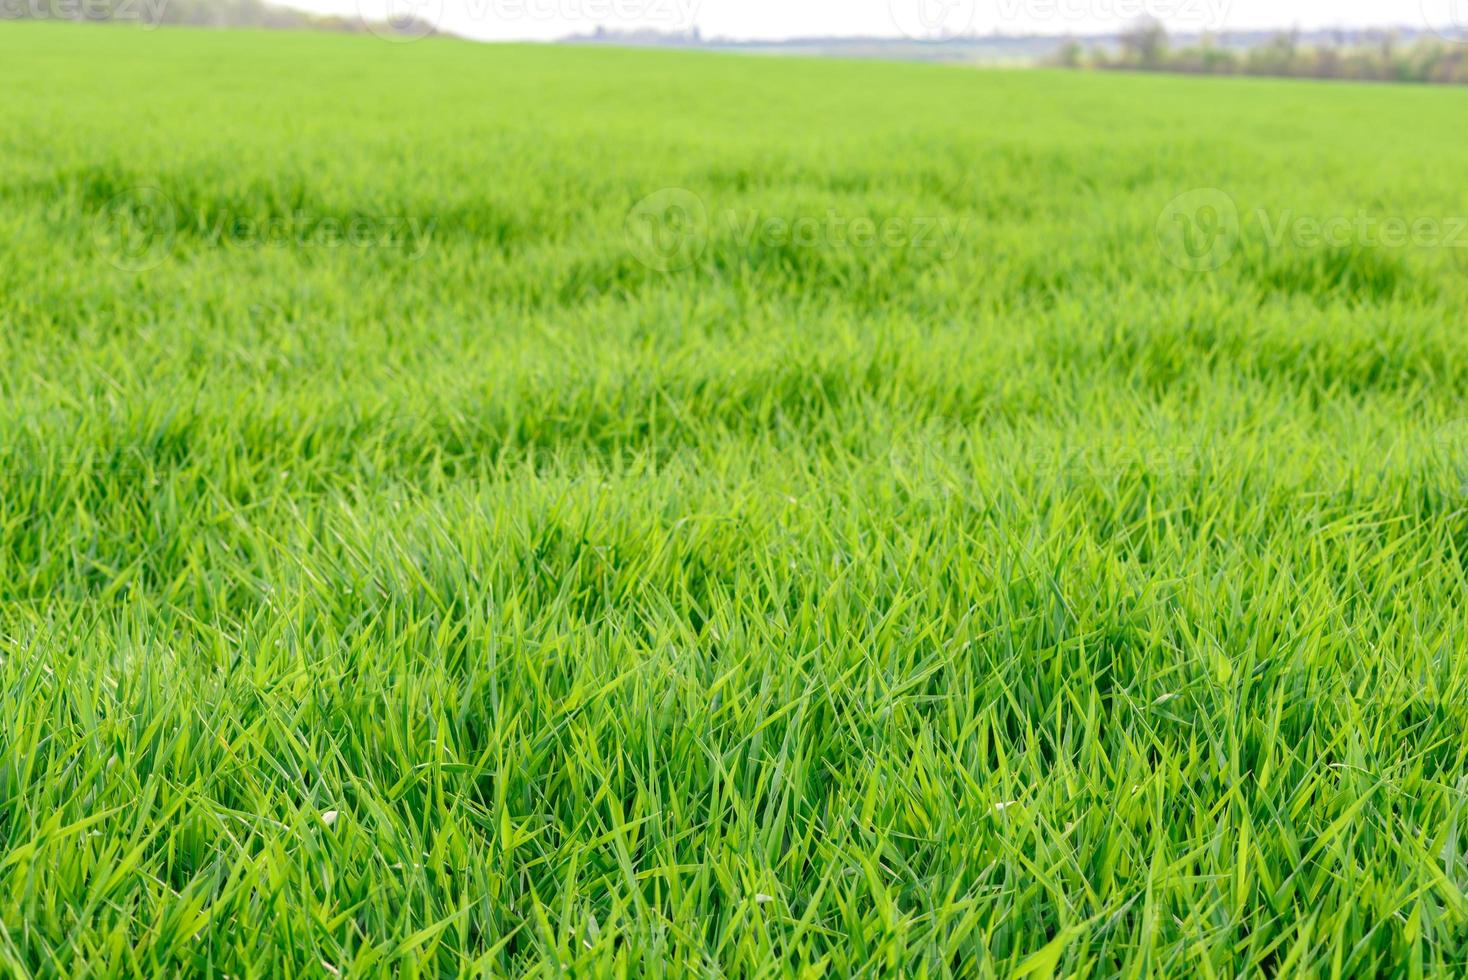 campo di trama di erba verde fresca come sfondo foto